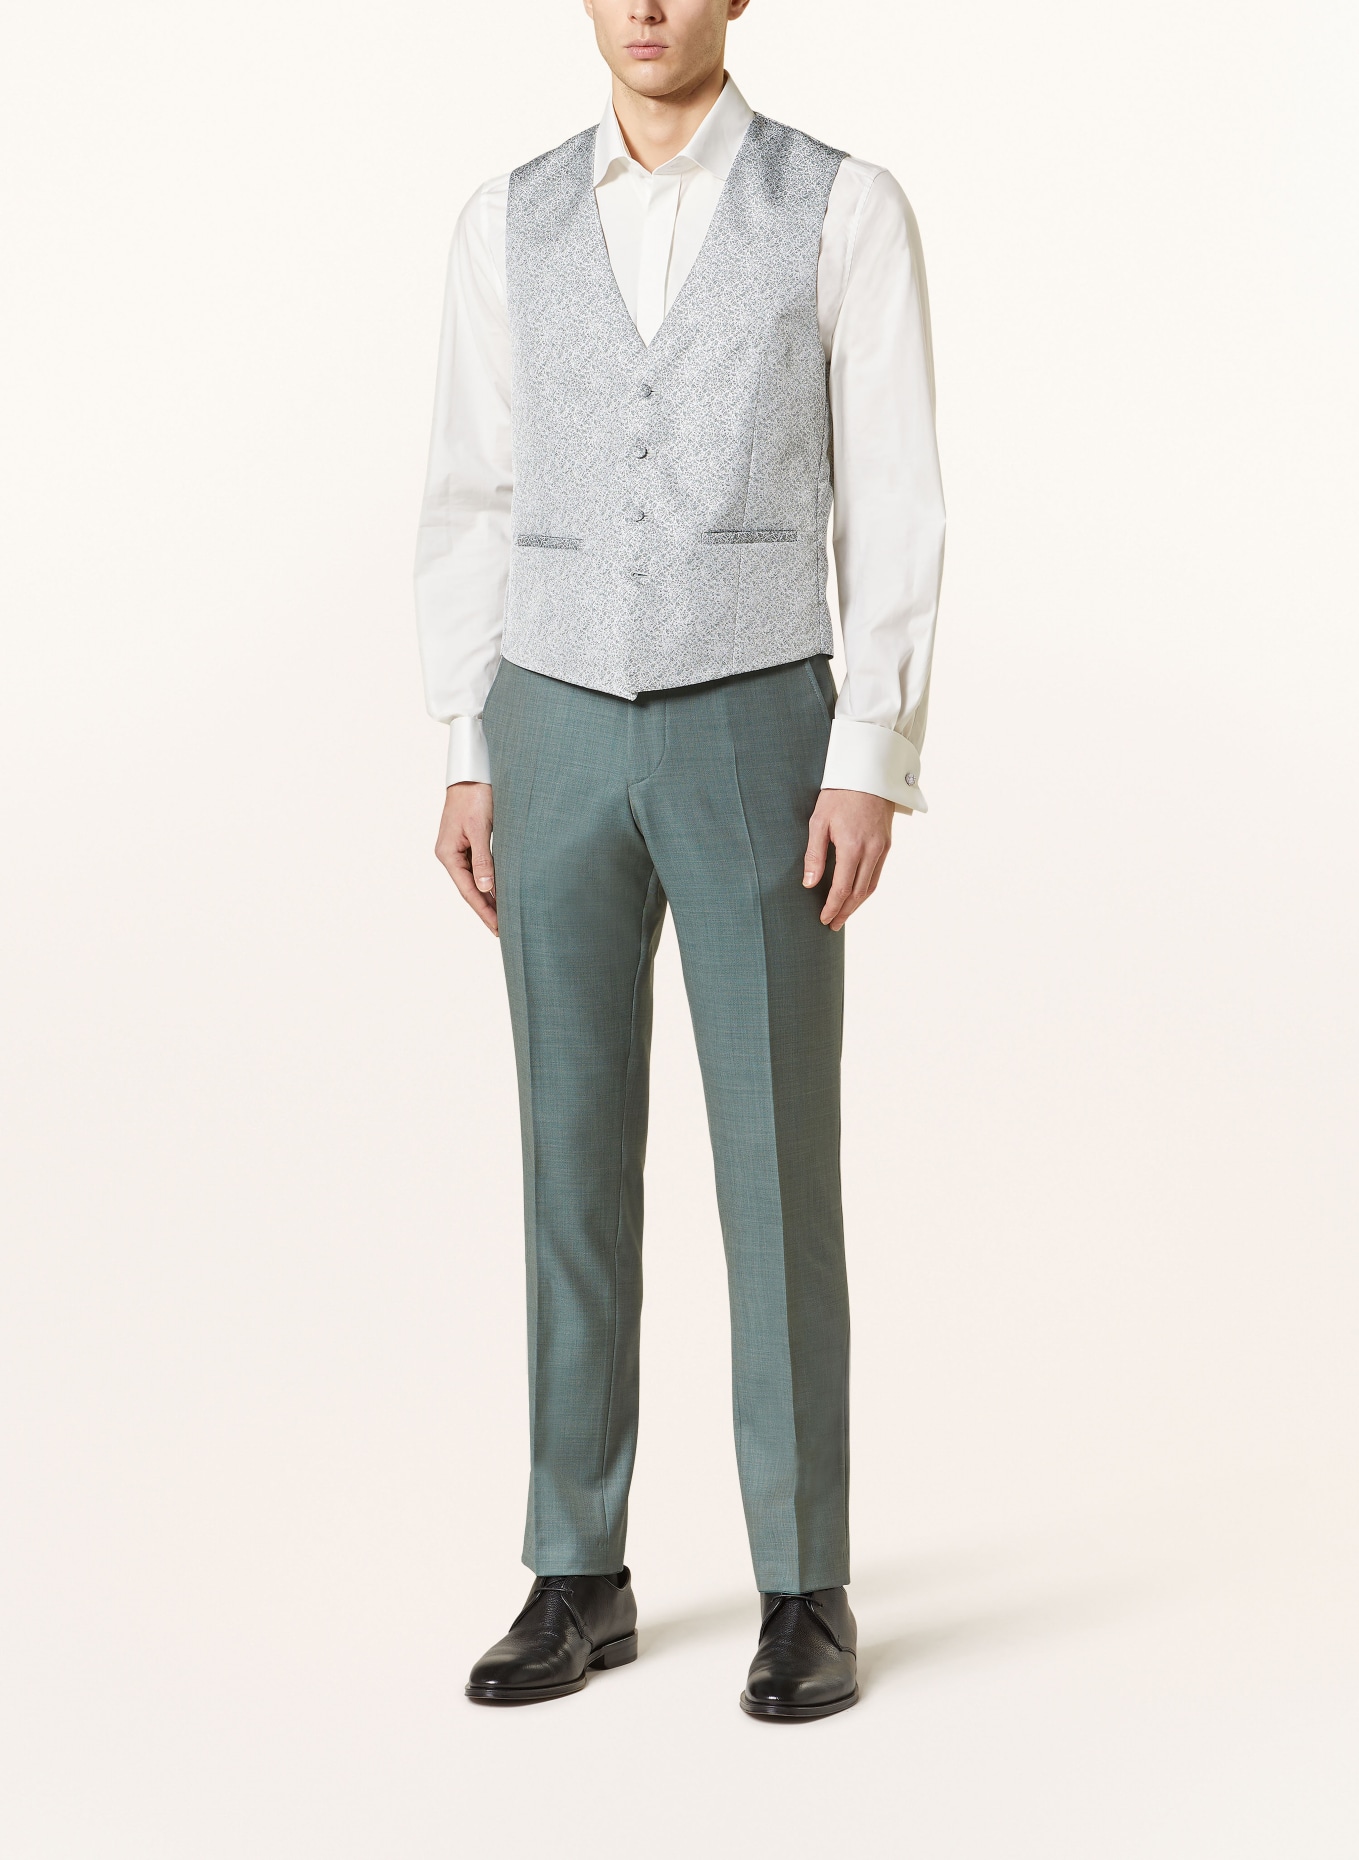 WILVORST Vest extra slim fit, Color: 040 Grün gemustert (Image 2)